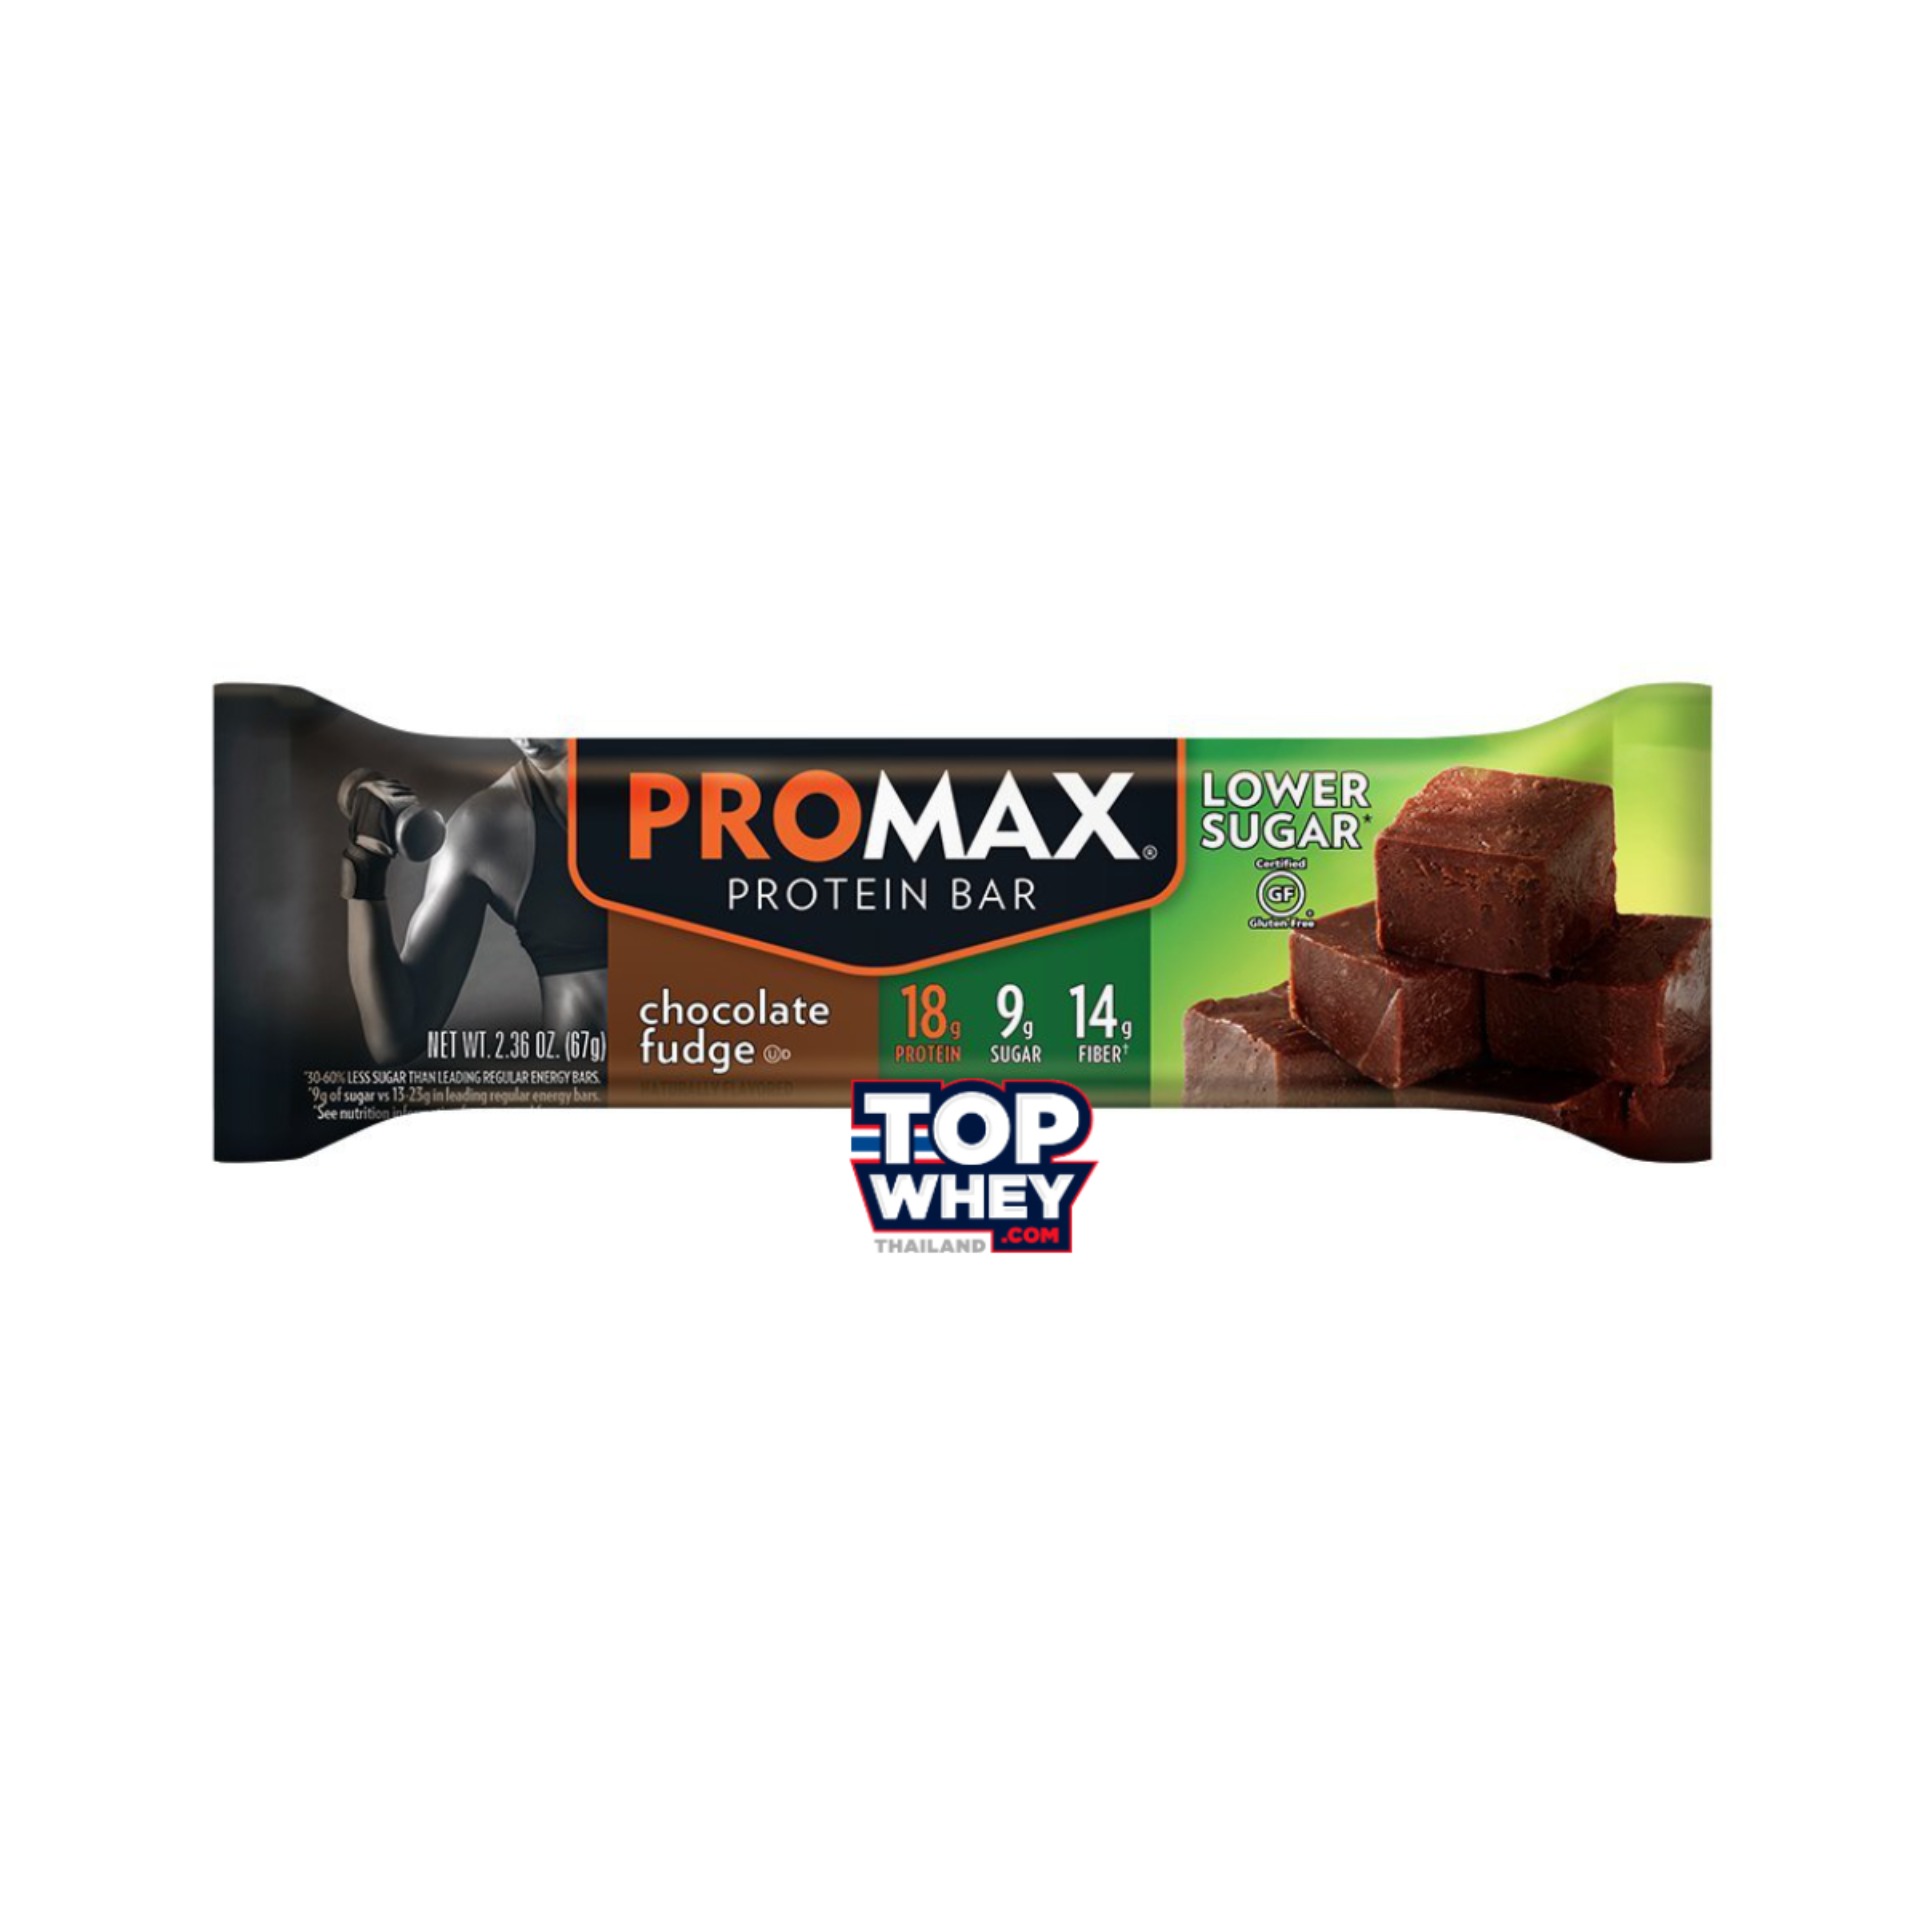 Promax Low Sugar Protein Bars - 1 Bar Chocolate Fudge  โปรตีนบาร์  มีส่วนผสมของเวย์โปรตีน  มีปริมาณน้ำตาลต่ำ  สามารถทานเล่น  หรือแทนมื้ออาหารได้  มีปริมาณของโปรตีนที่สูง